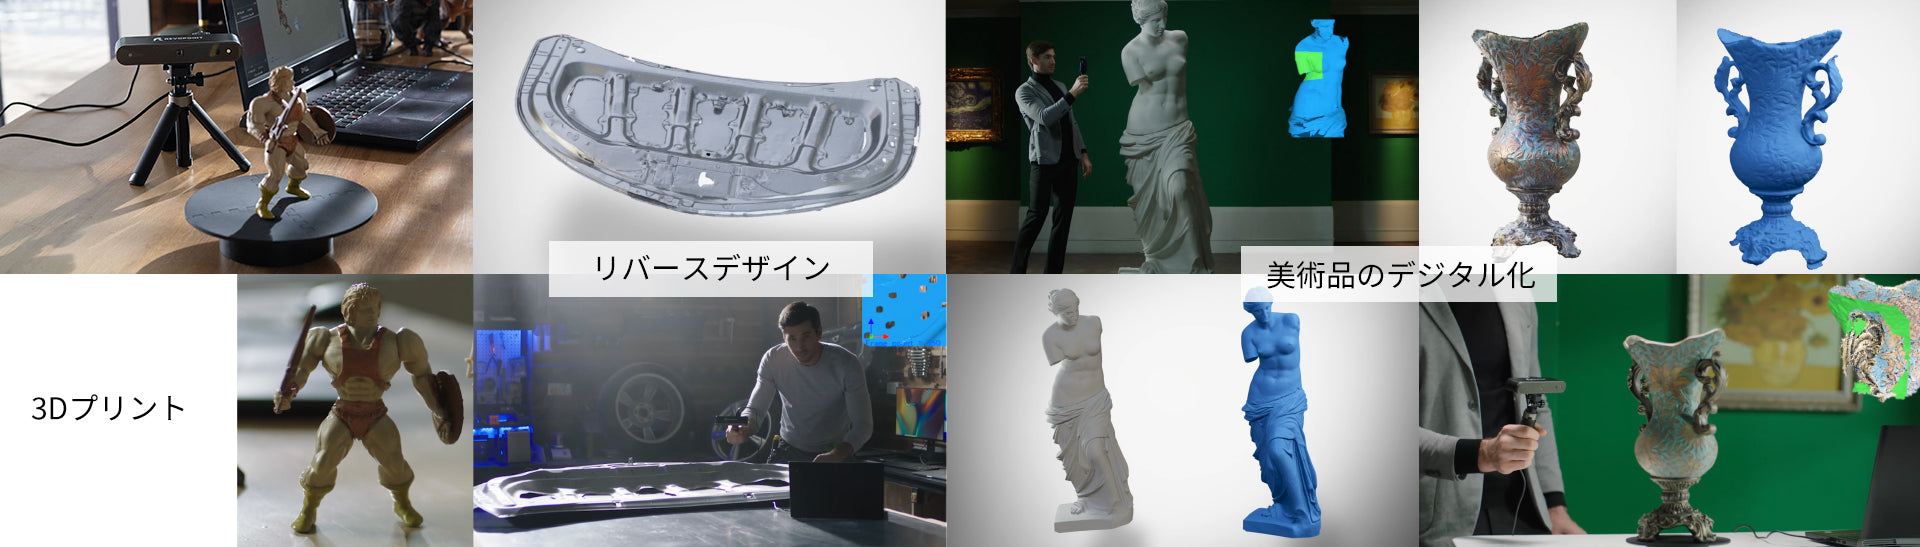 revopoint 3Dスキャナ 3Dスキャン 高精度 高発色 3Dデザイン 3D設計 3Dプリント3Dプリンター安全光源デクストップ回転台ハンドヘルド CAD ミニチュア 3Dジオラマ DIY  VR/AR 3Dデジタル化 3Dイメージング 3Dモデル 3Dモデリング